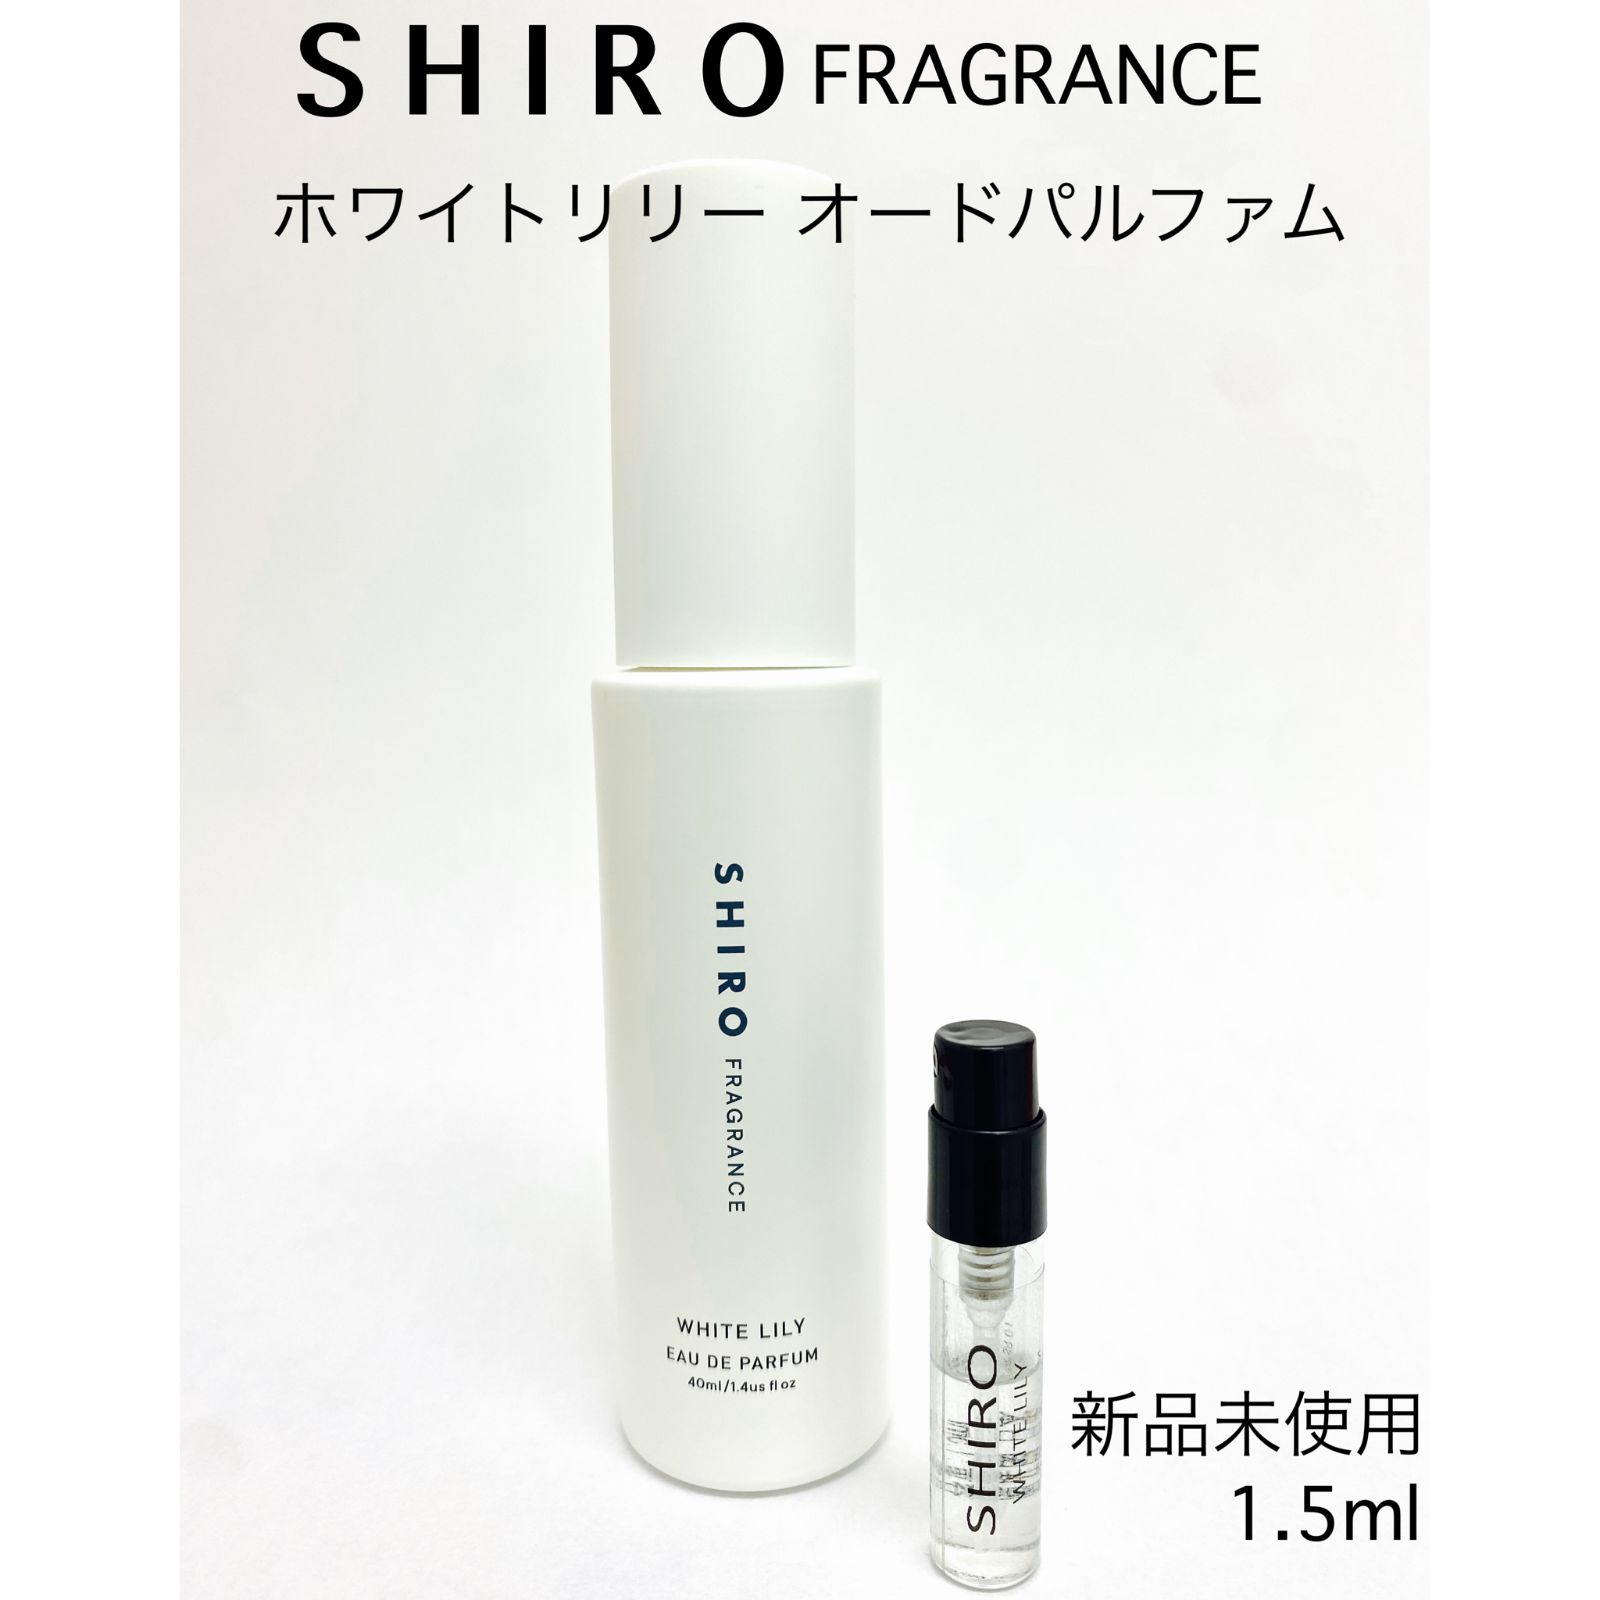 ホワイトリリー オードパルファン 40ml シロ shiro - 香水(ユニセックス)